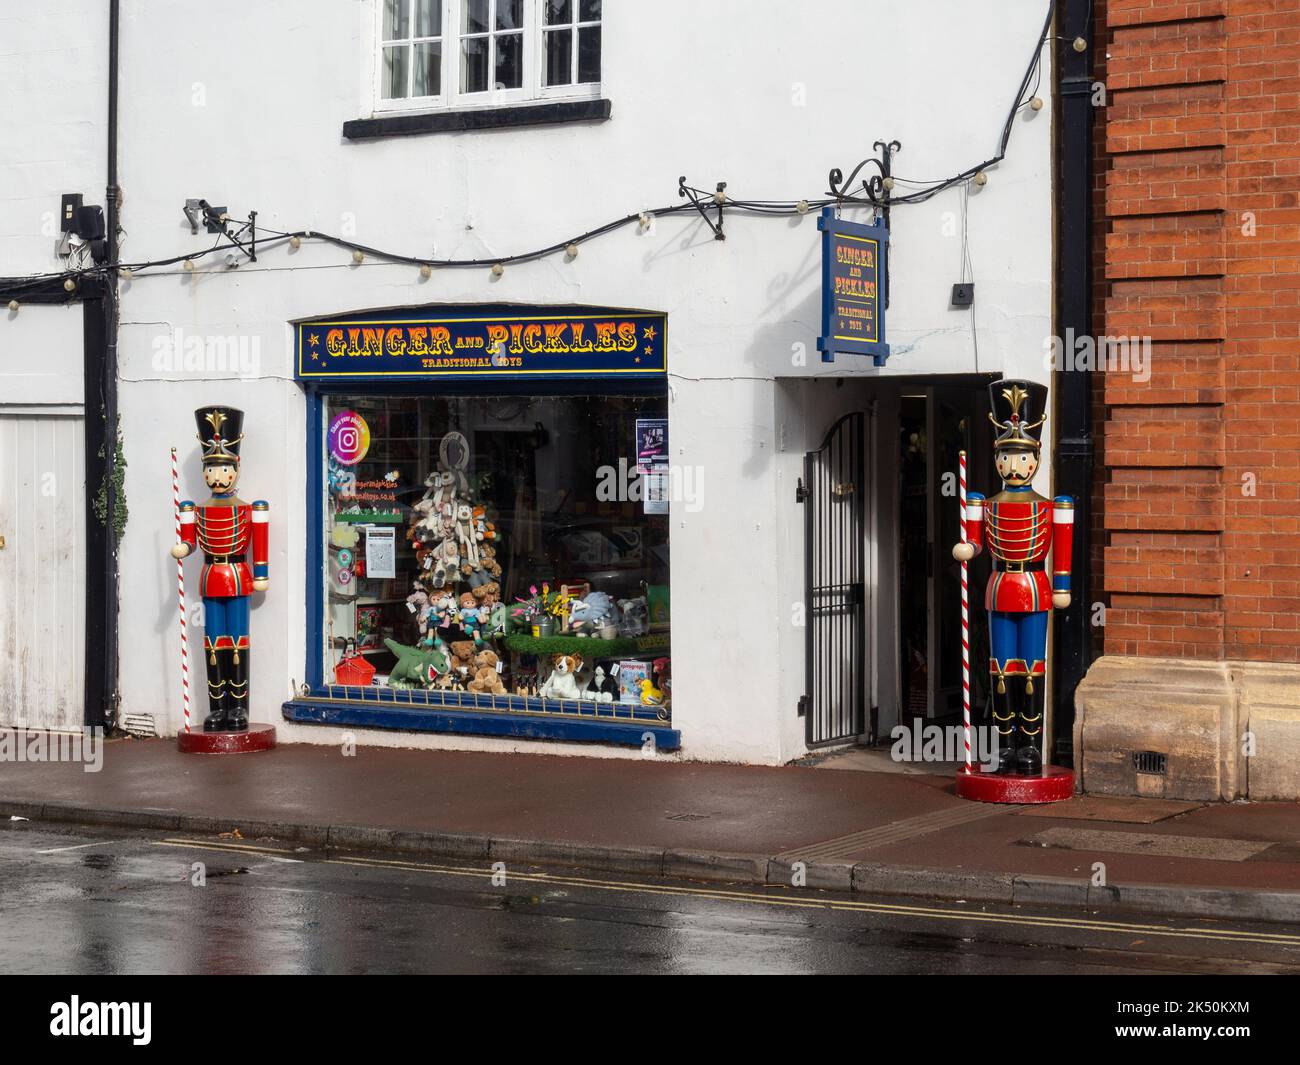 Ginger et pickles magasin de jouets traditionnels dans la ville de Upton upon Severn, Worcestershire, Royaume-Uni; flanqué de deux personnages de casse-noisette Banque D'Images